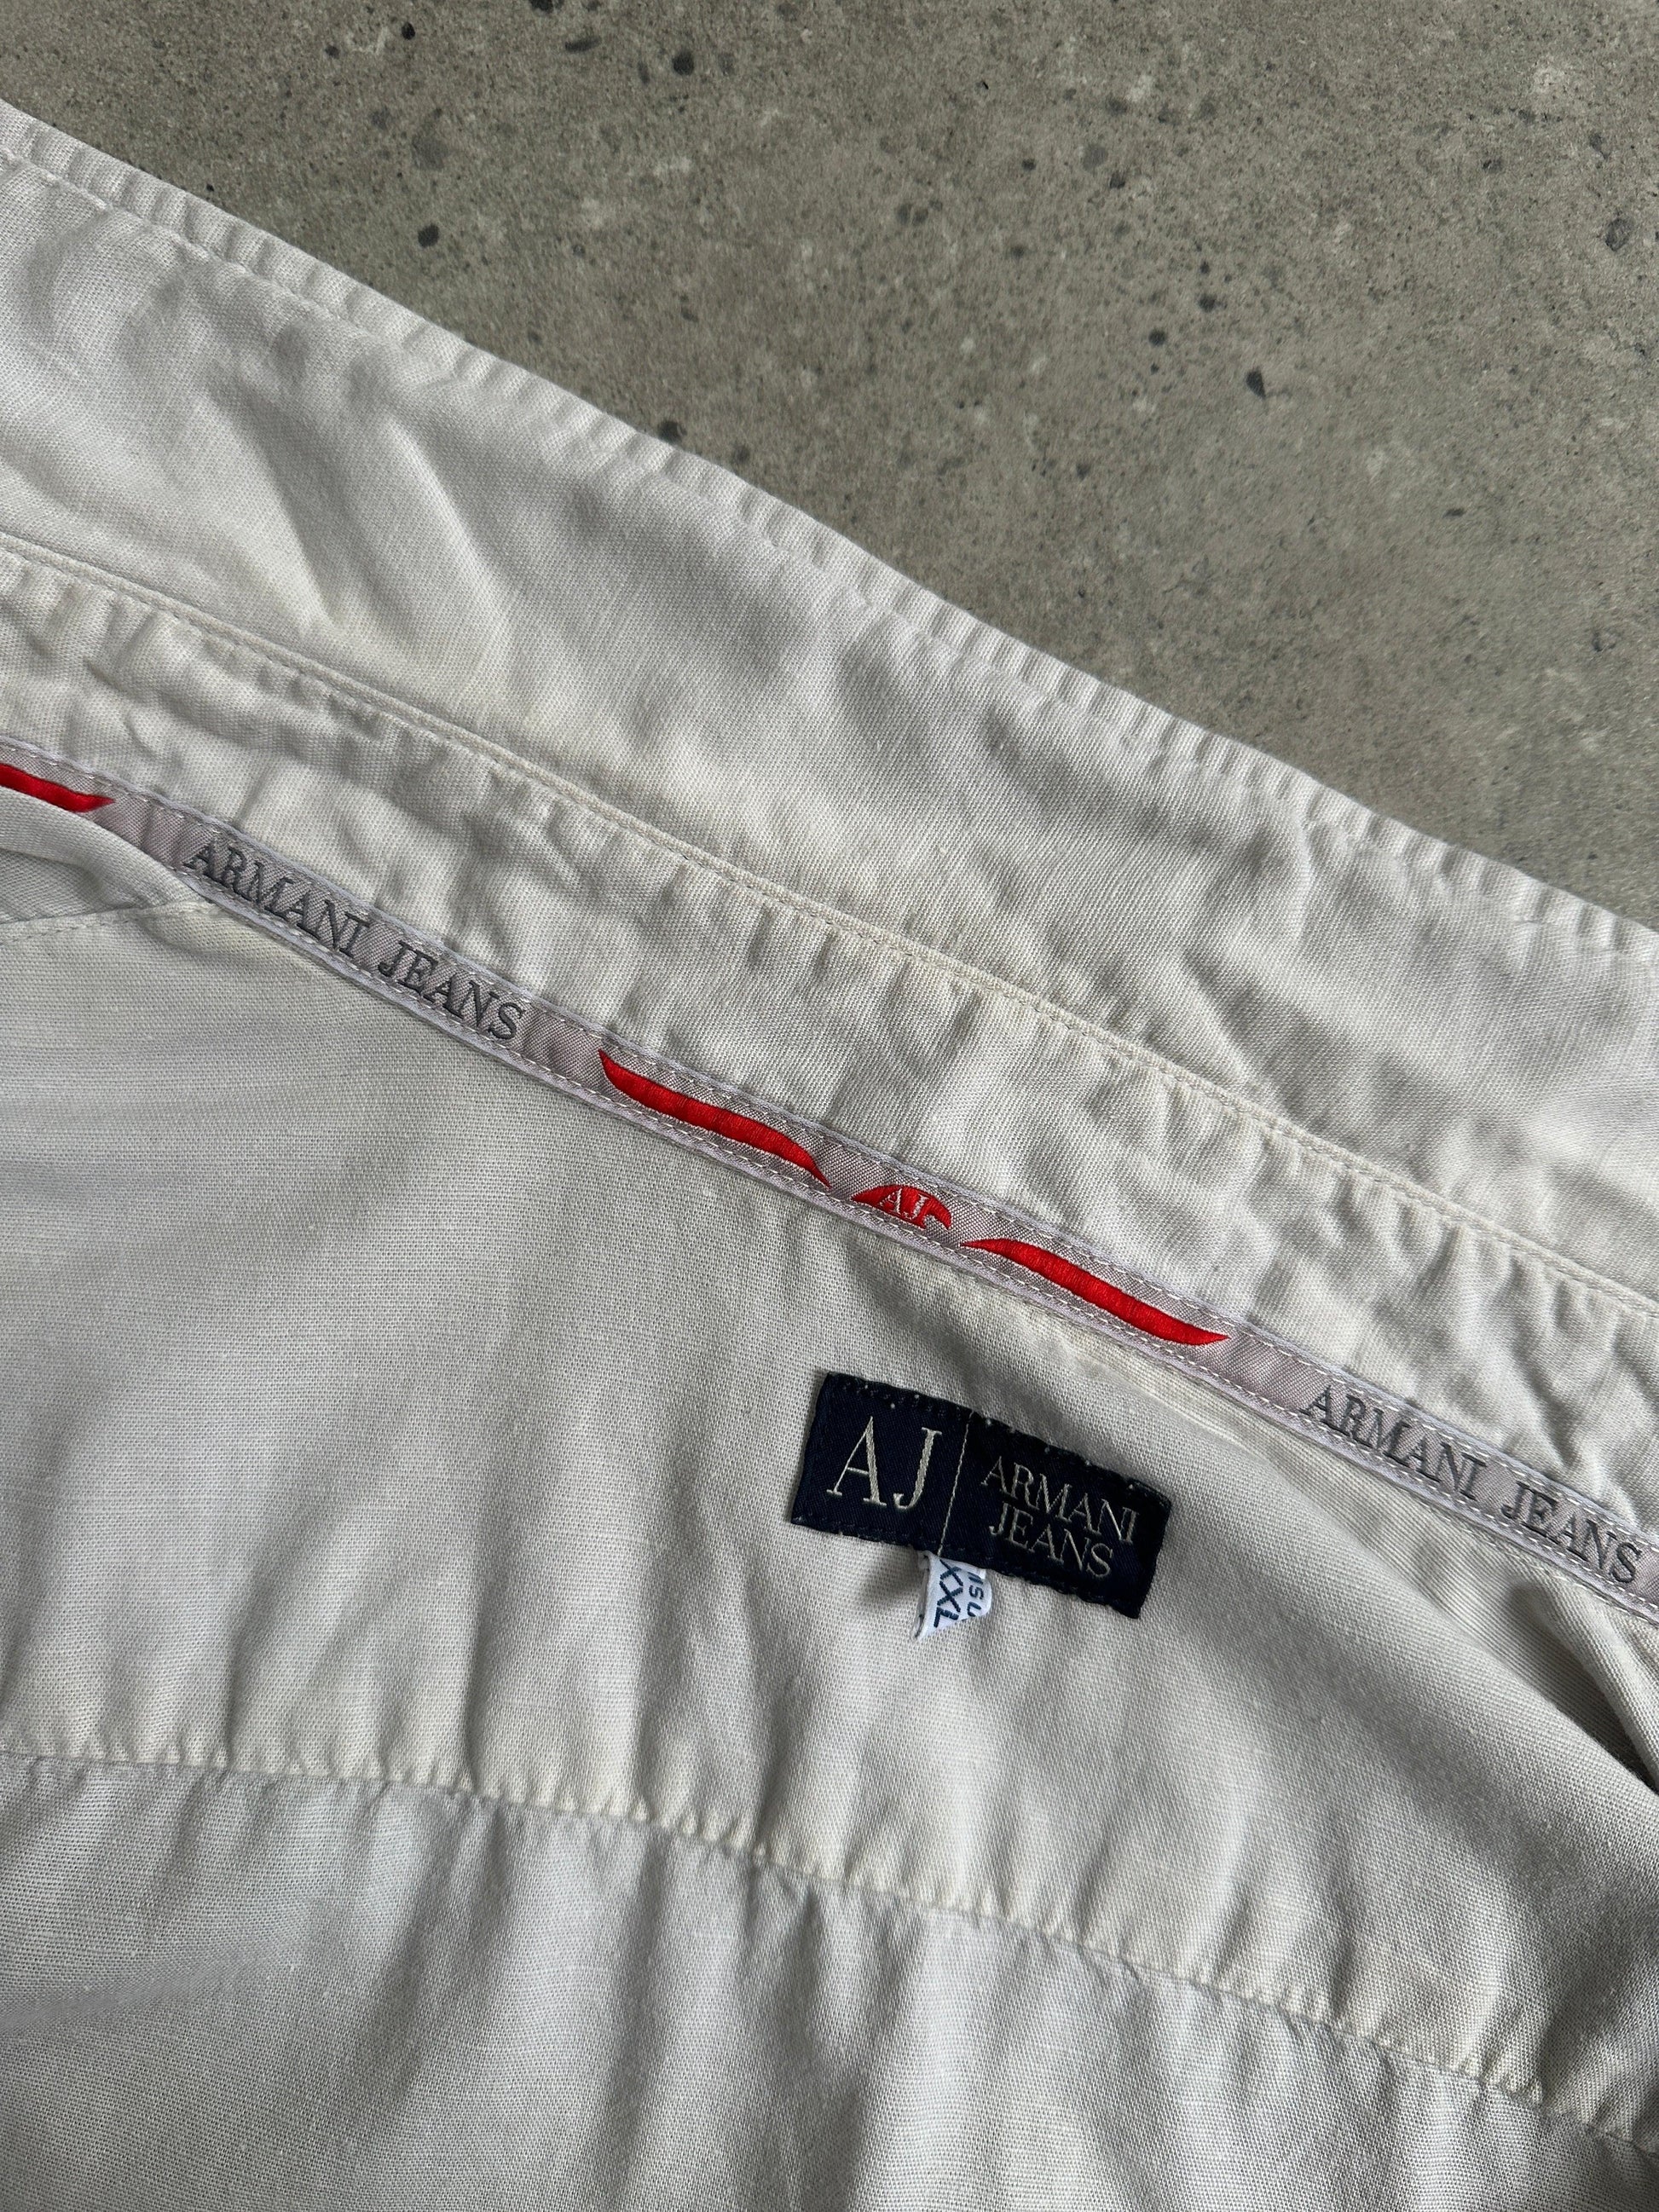 Armani Jeans Cotton Linen Logo Shirt - XL - Known Source